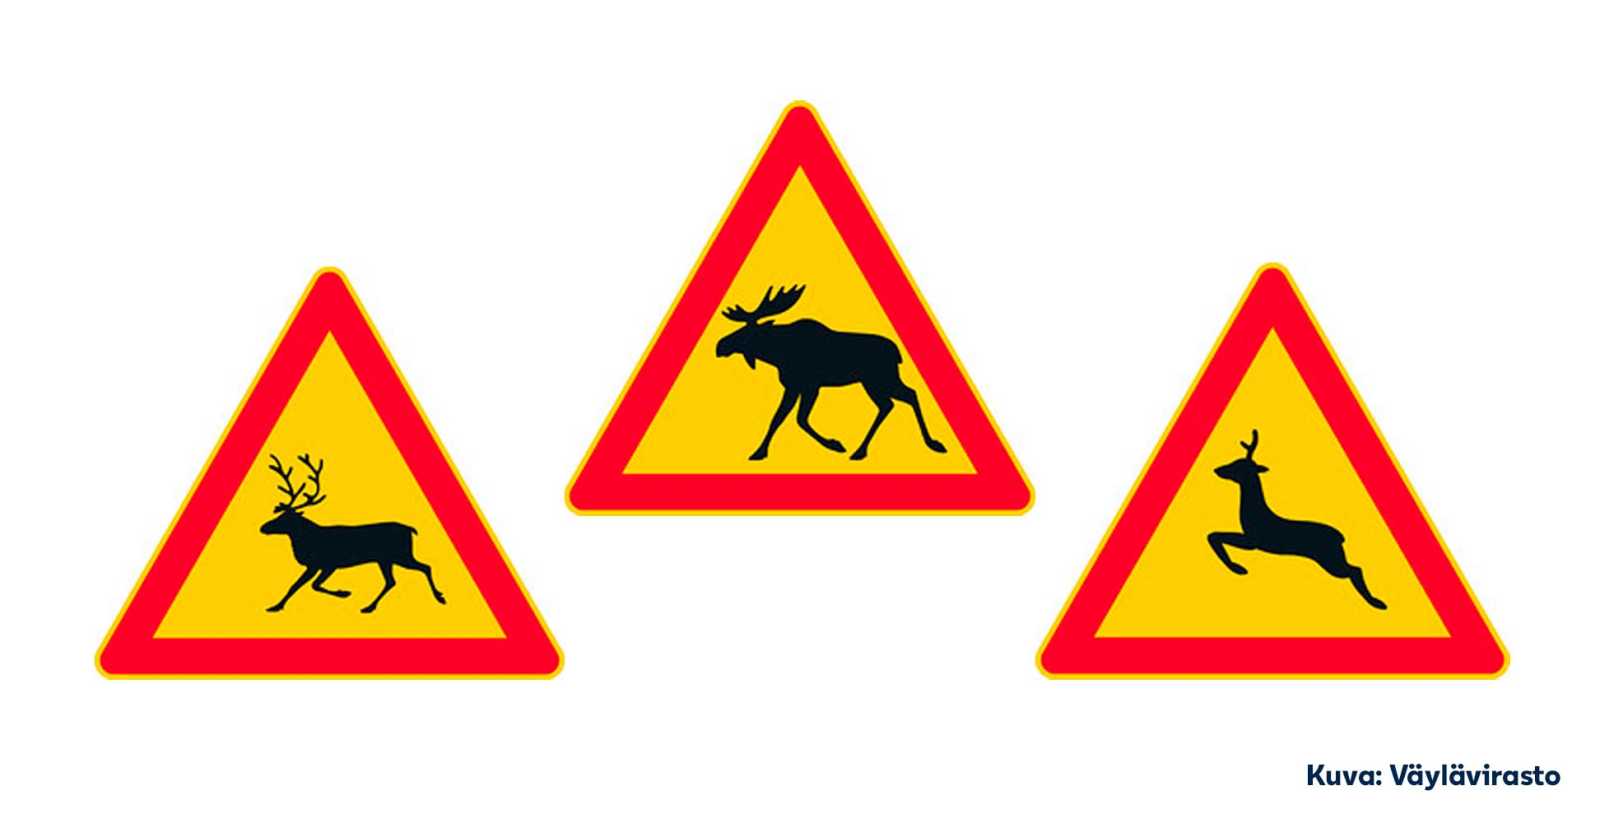 Kuvassa näkyy kolme hirvieläimistä varoittavaa liikennemerkkiä eli varoitusmerkit hirvelle, porolle ja kauriseläimelle.